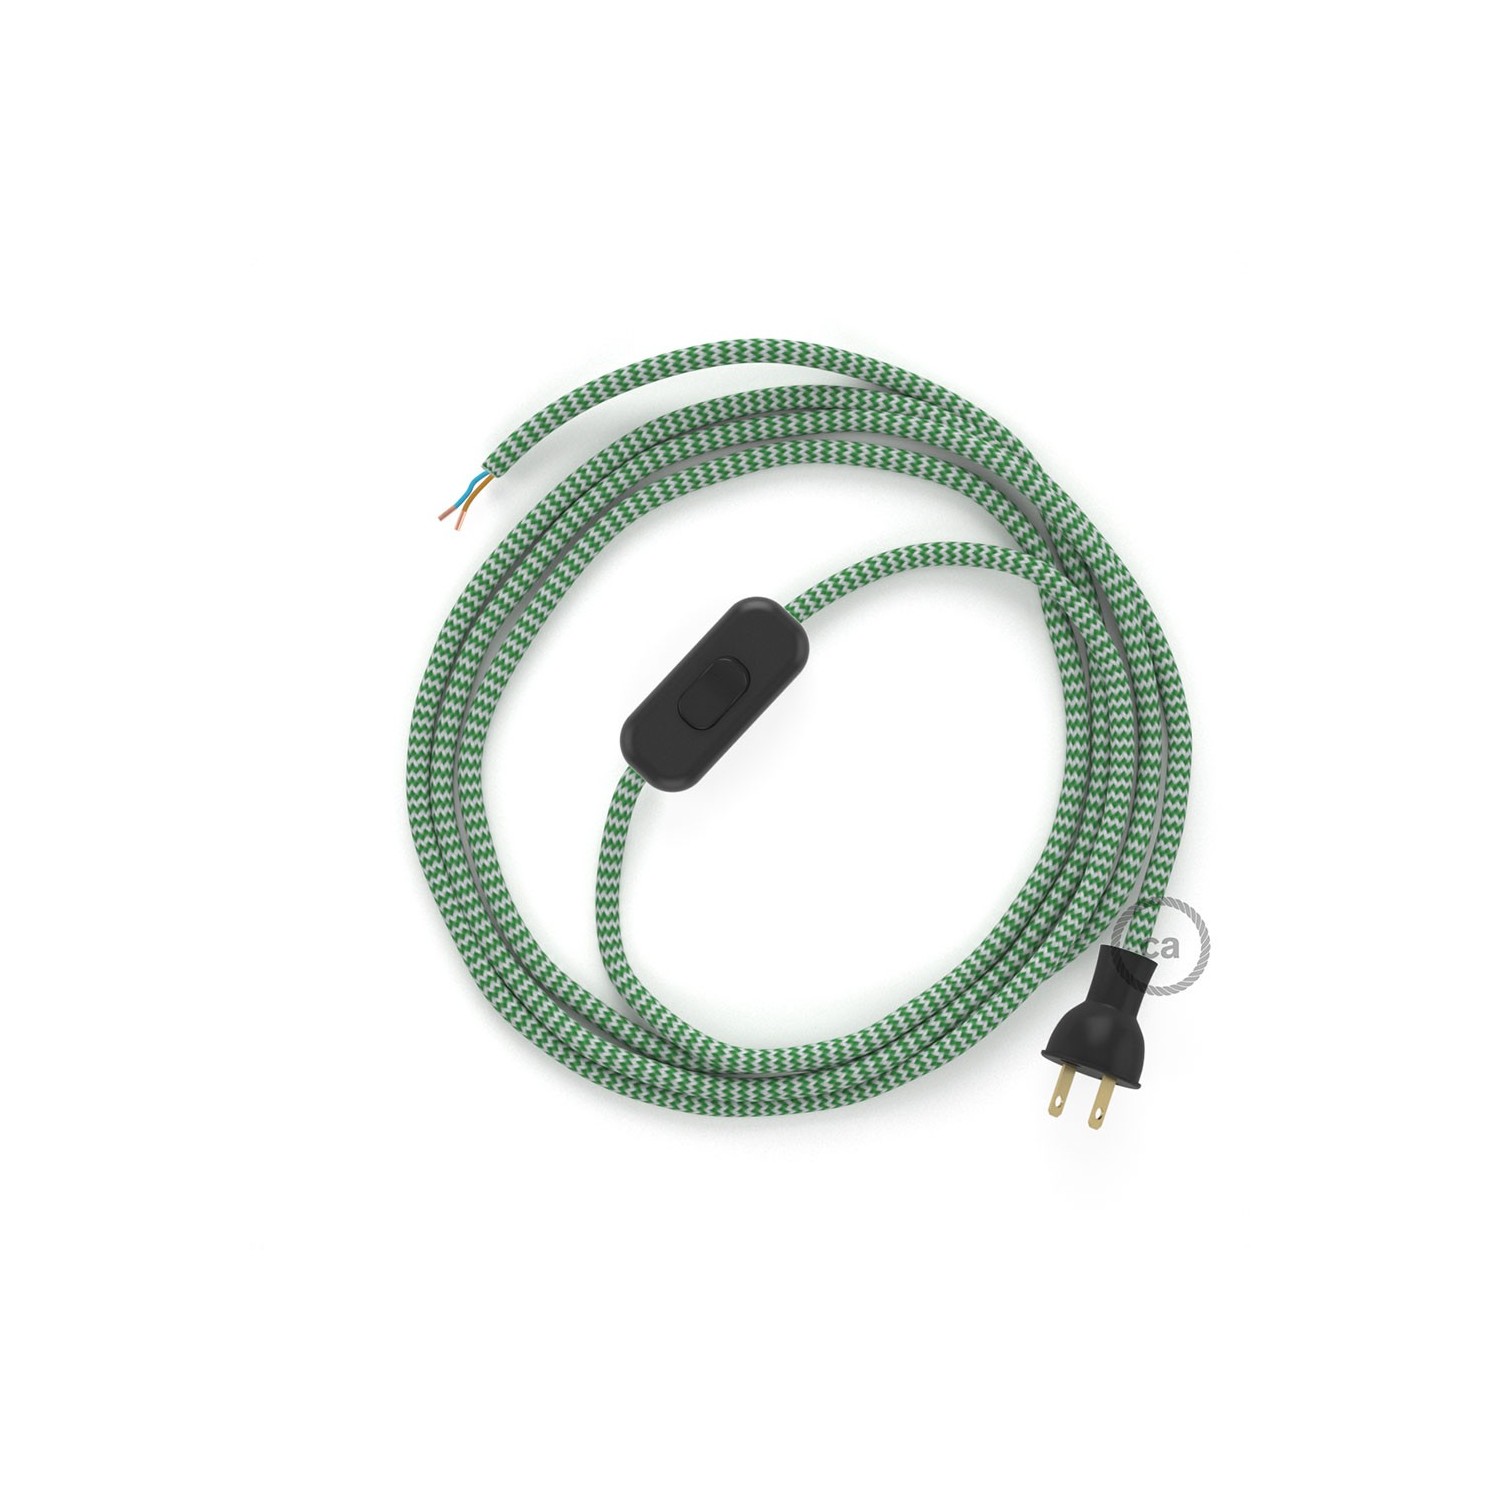 Cableado para lámpara de mesa, cable RZ06 Rayón ZigZag Blanco Verde 1,8 m. Elige el color de la clavija y del interruptor!